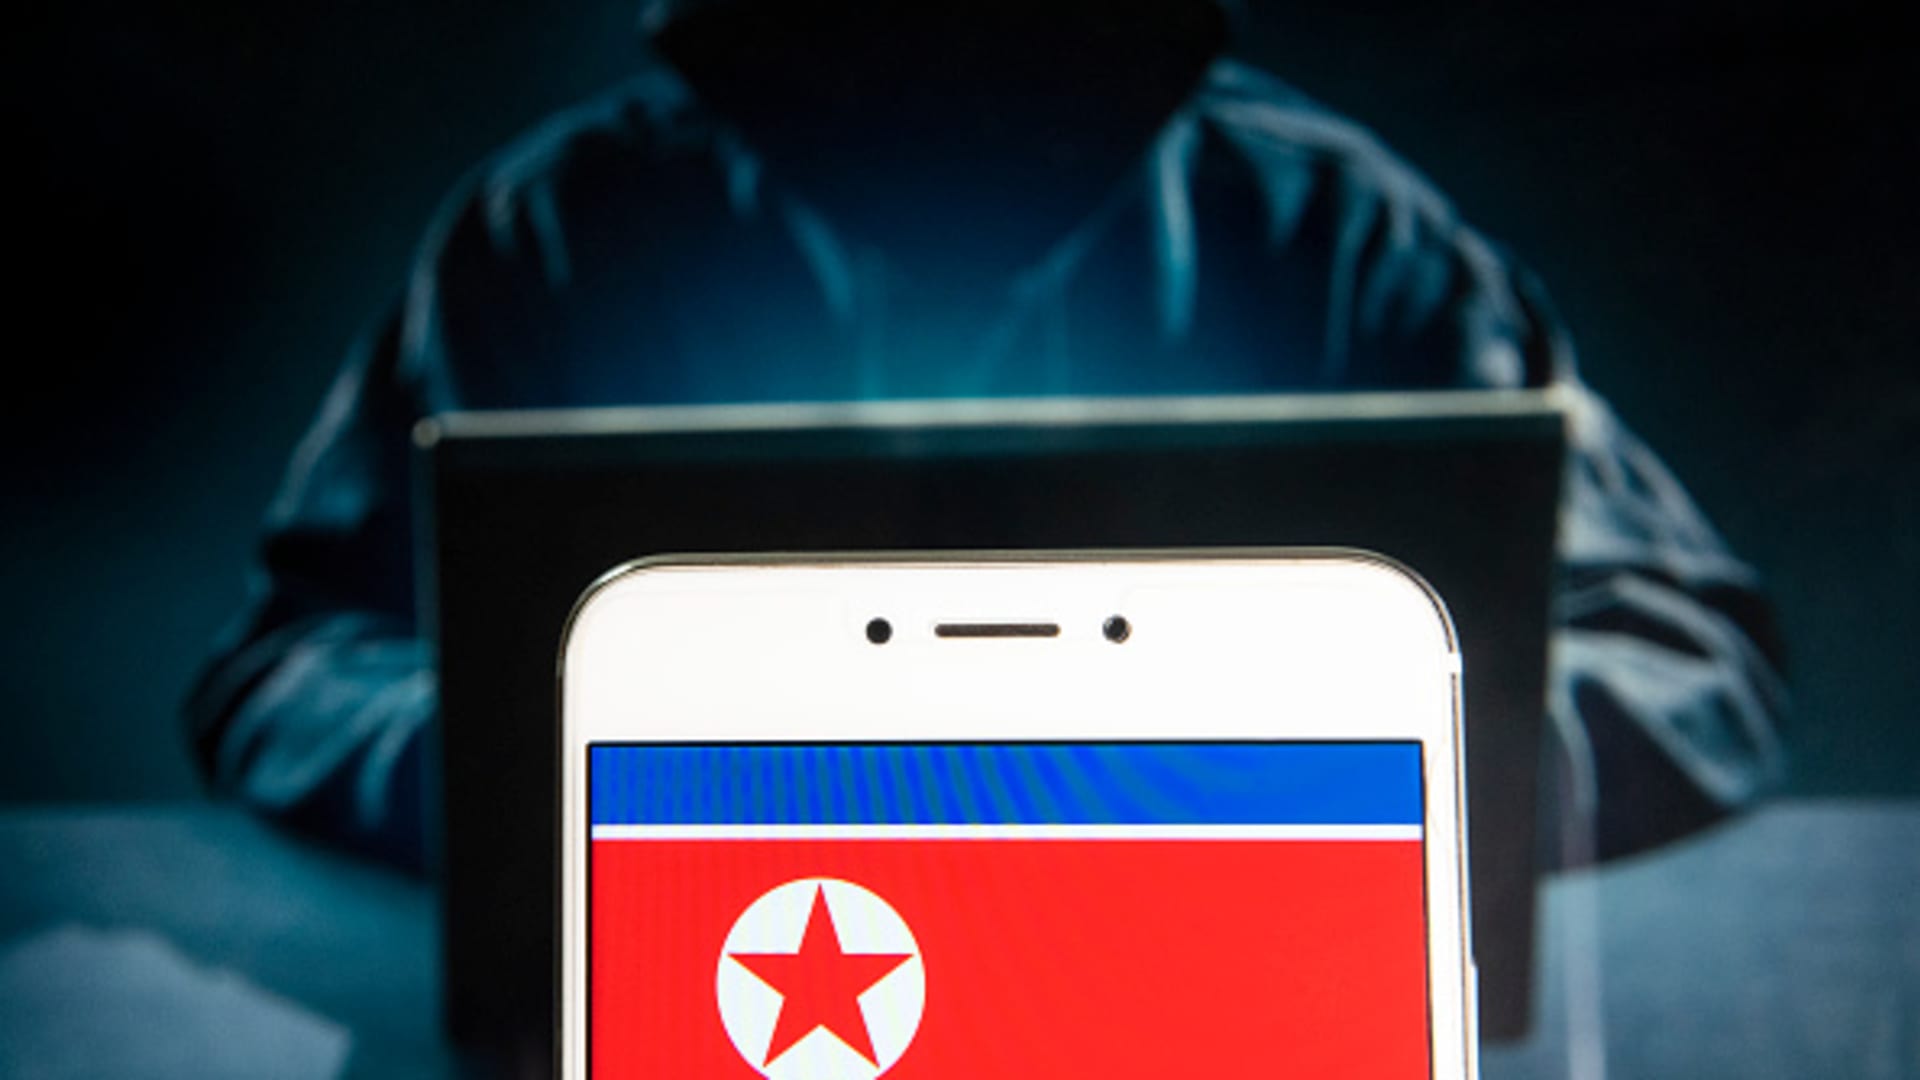 1억 달러 규모의 암호화폐 절도 배후에 북한과 연결된 해커들이 있다고 FBI가 밝혔습니다.